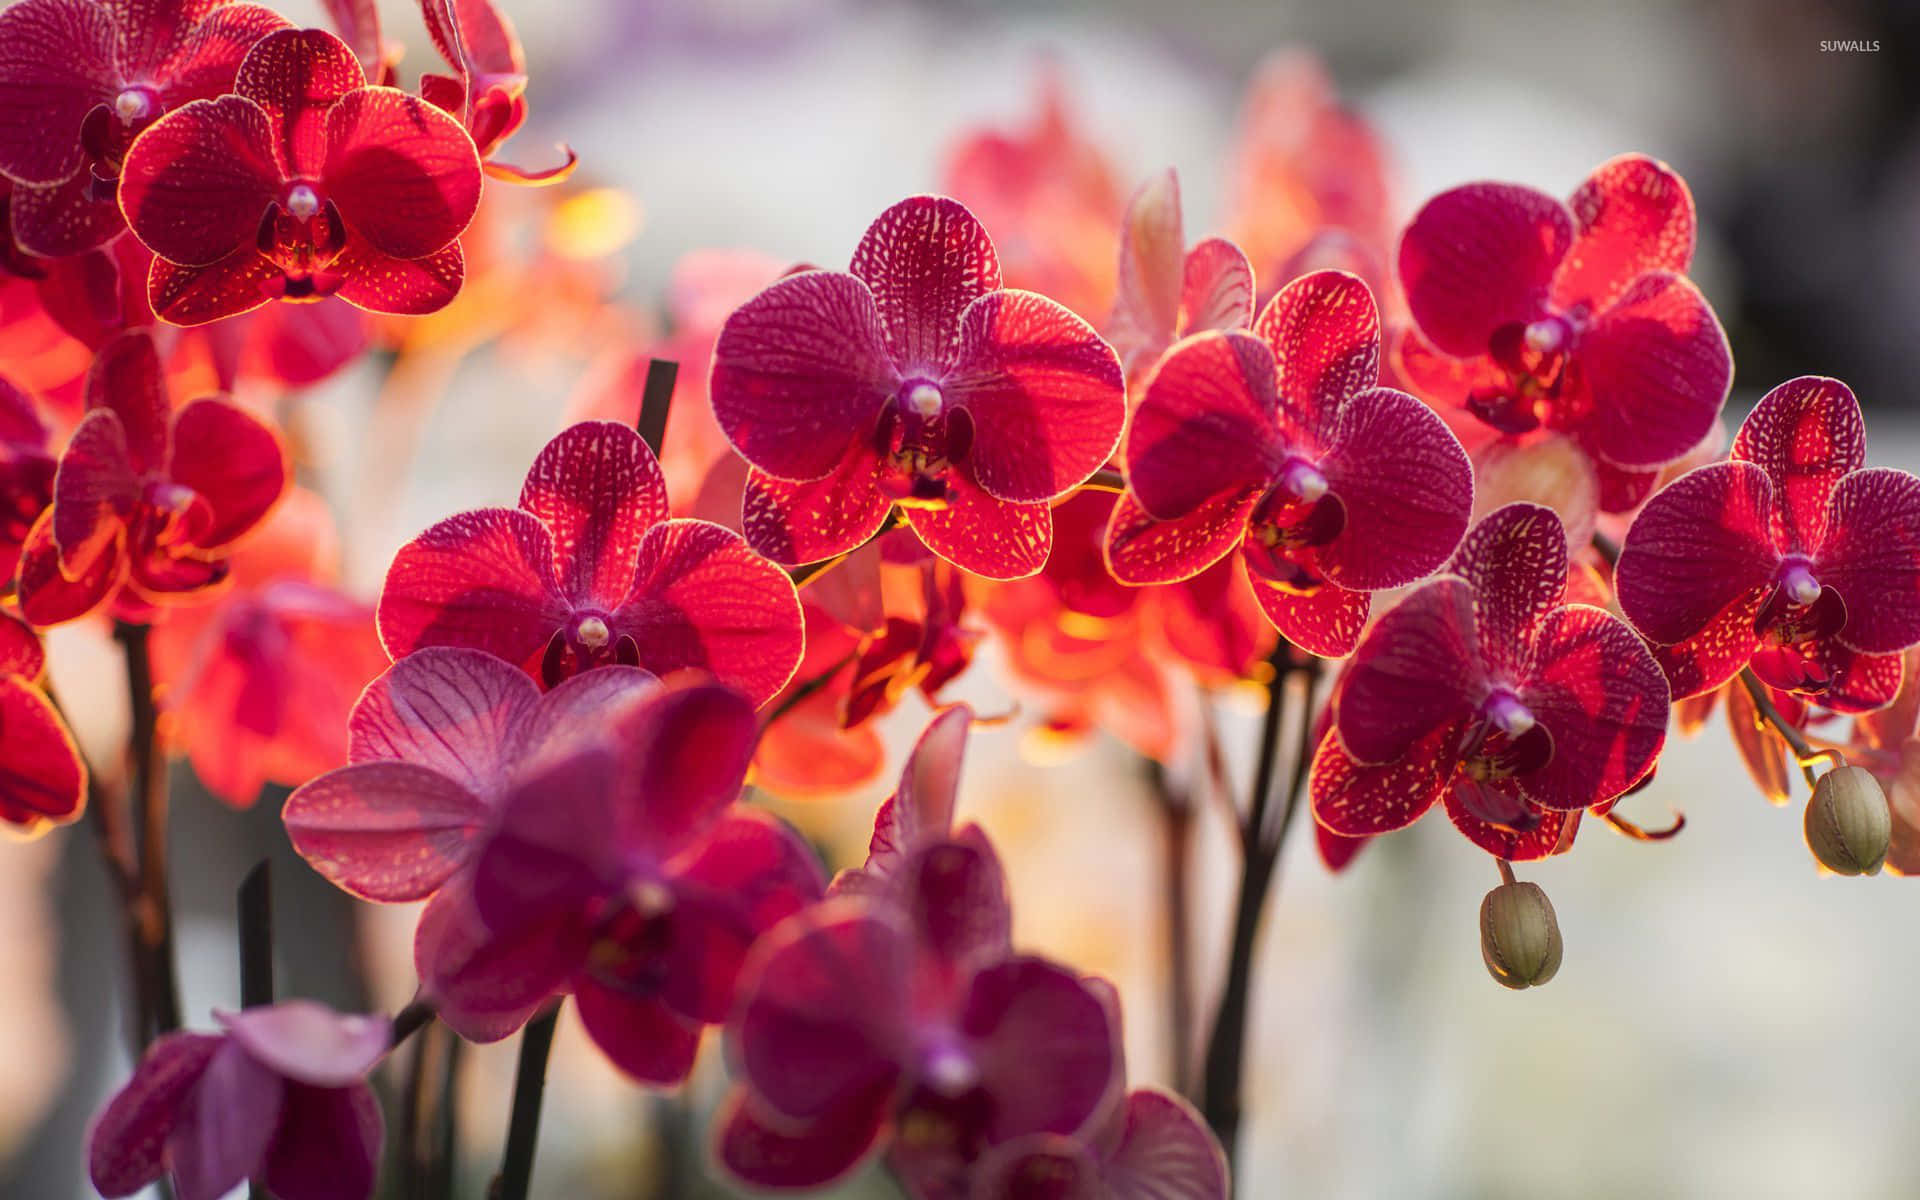 Orkidéeri Full Blom På En Blomsterutställning